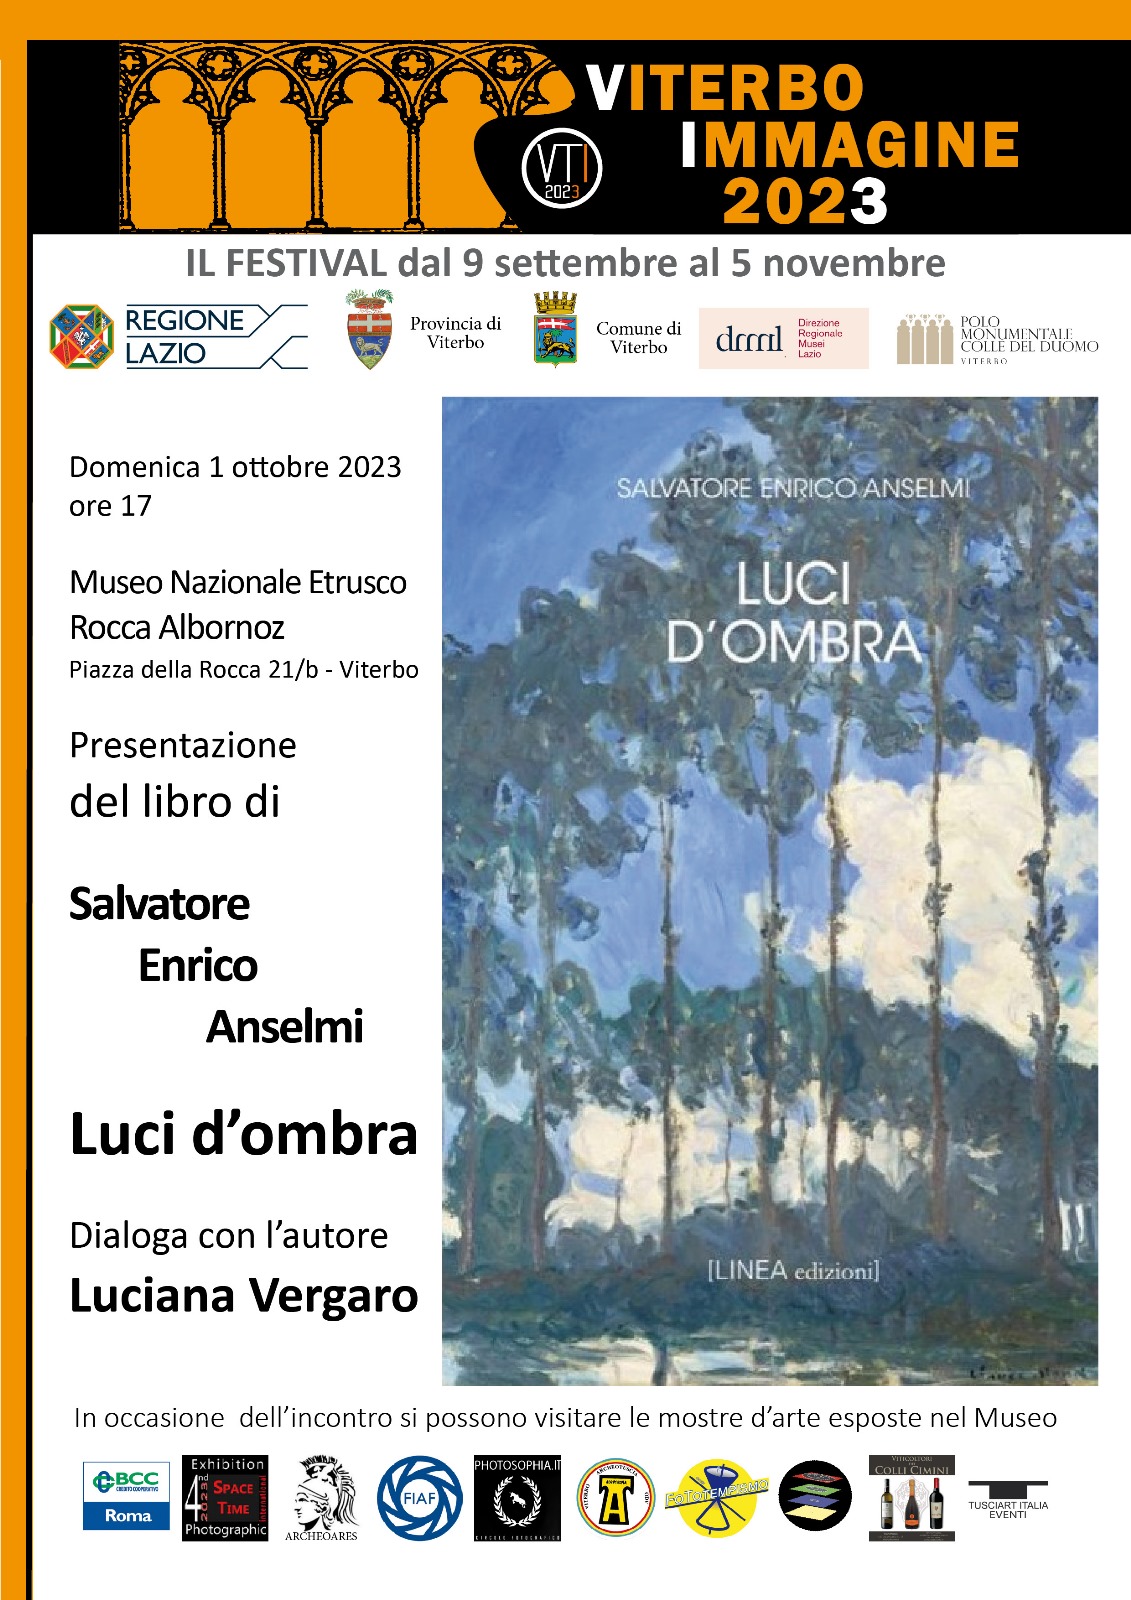 1 Ottobre 2023 – Salvatore Enrico Anselmi presenta il suo libro “Luci d’ombra” alla Rocca Albornoz di Viterbo